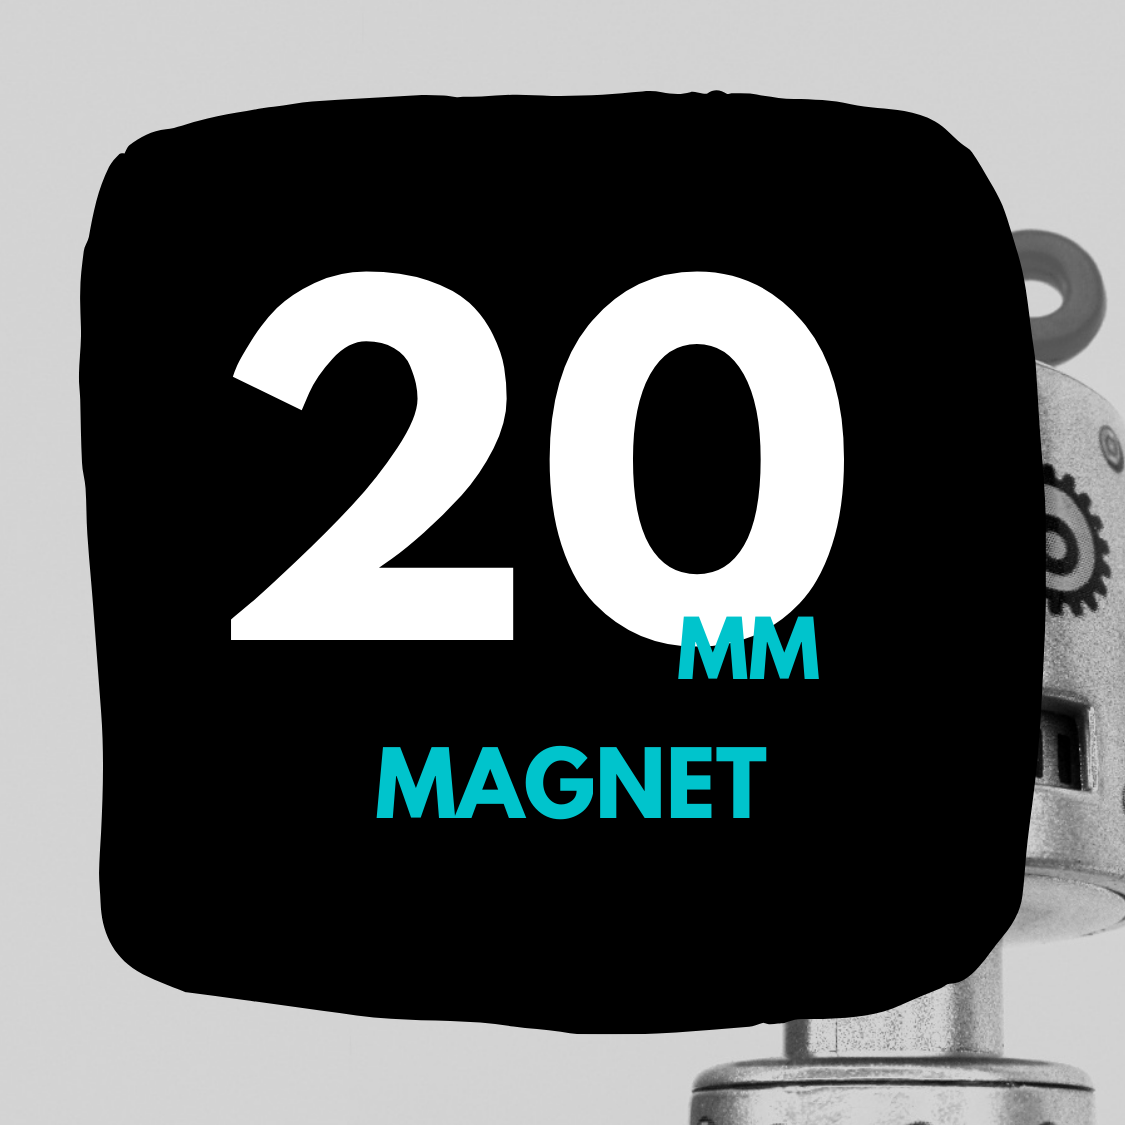 20mm Magnet